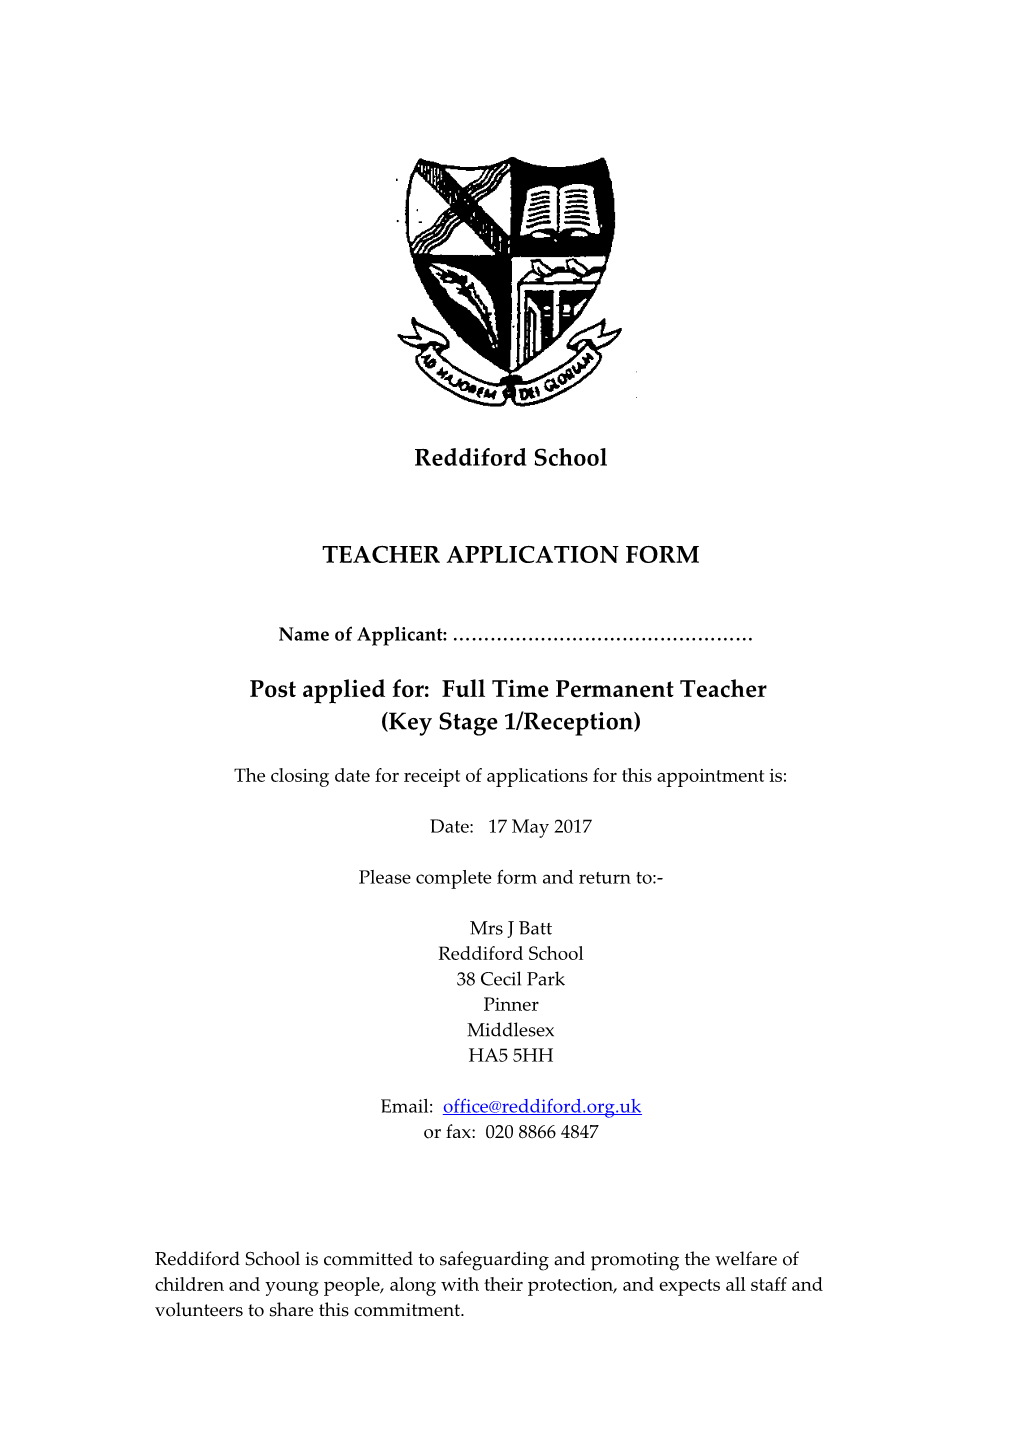 Post Applied For: Full Time Permanent Teacher